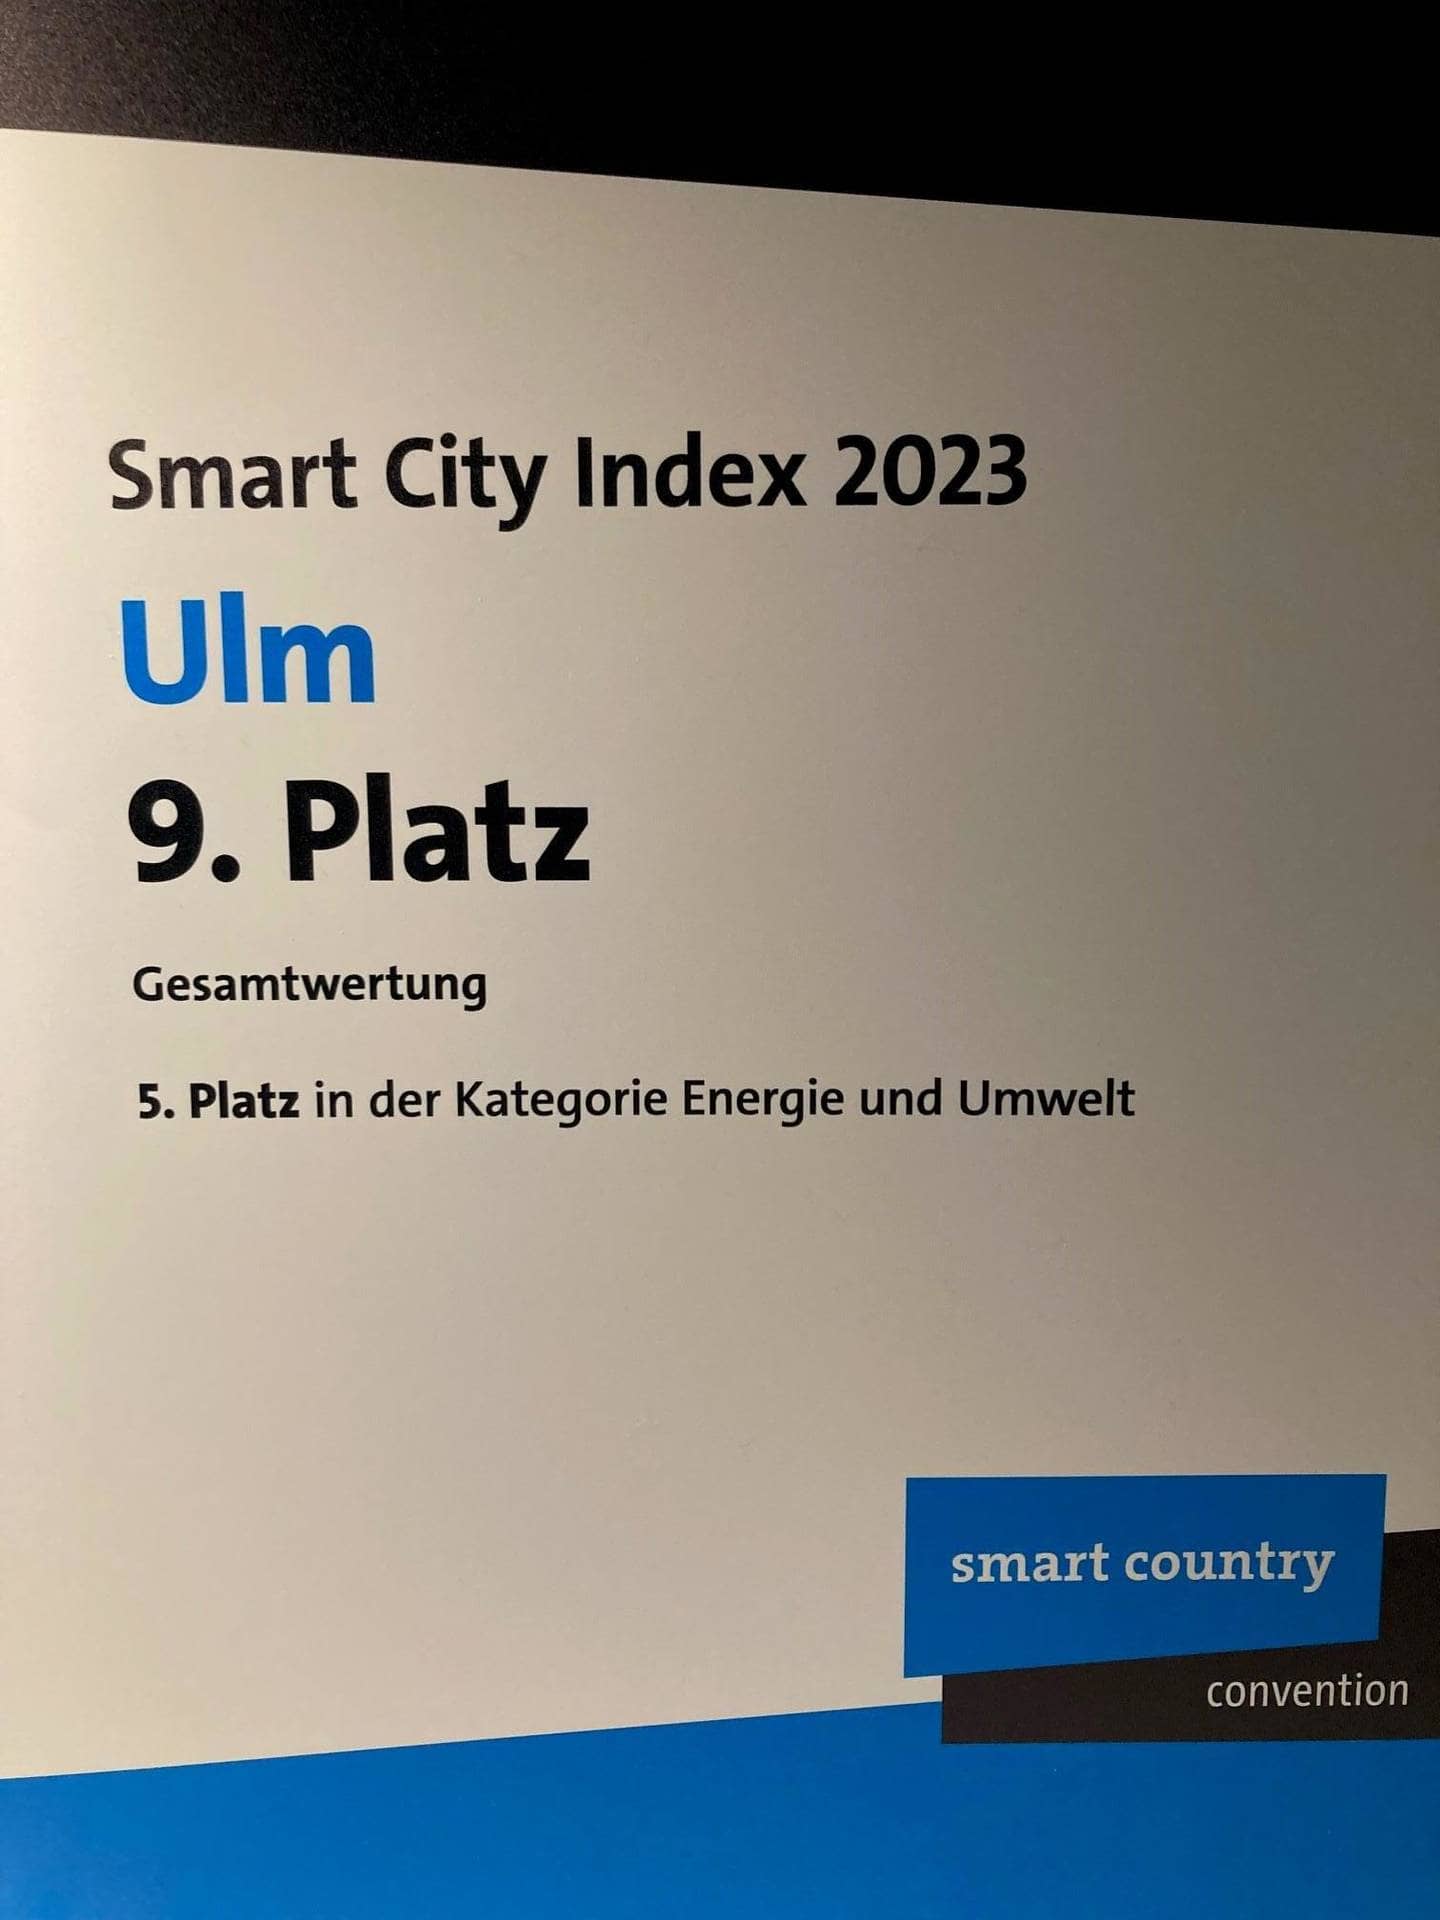 Stadt Ulm - Smart City Index 2023: Ulm jetzt auf Platz 9